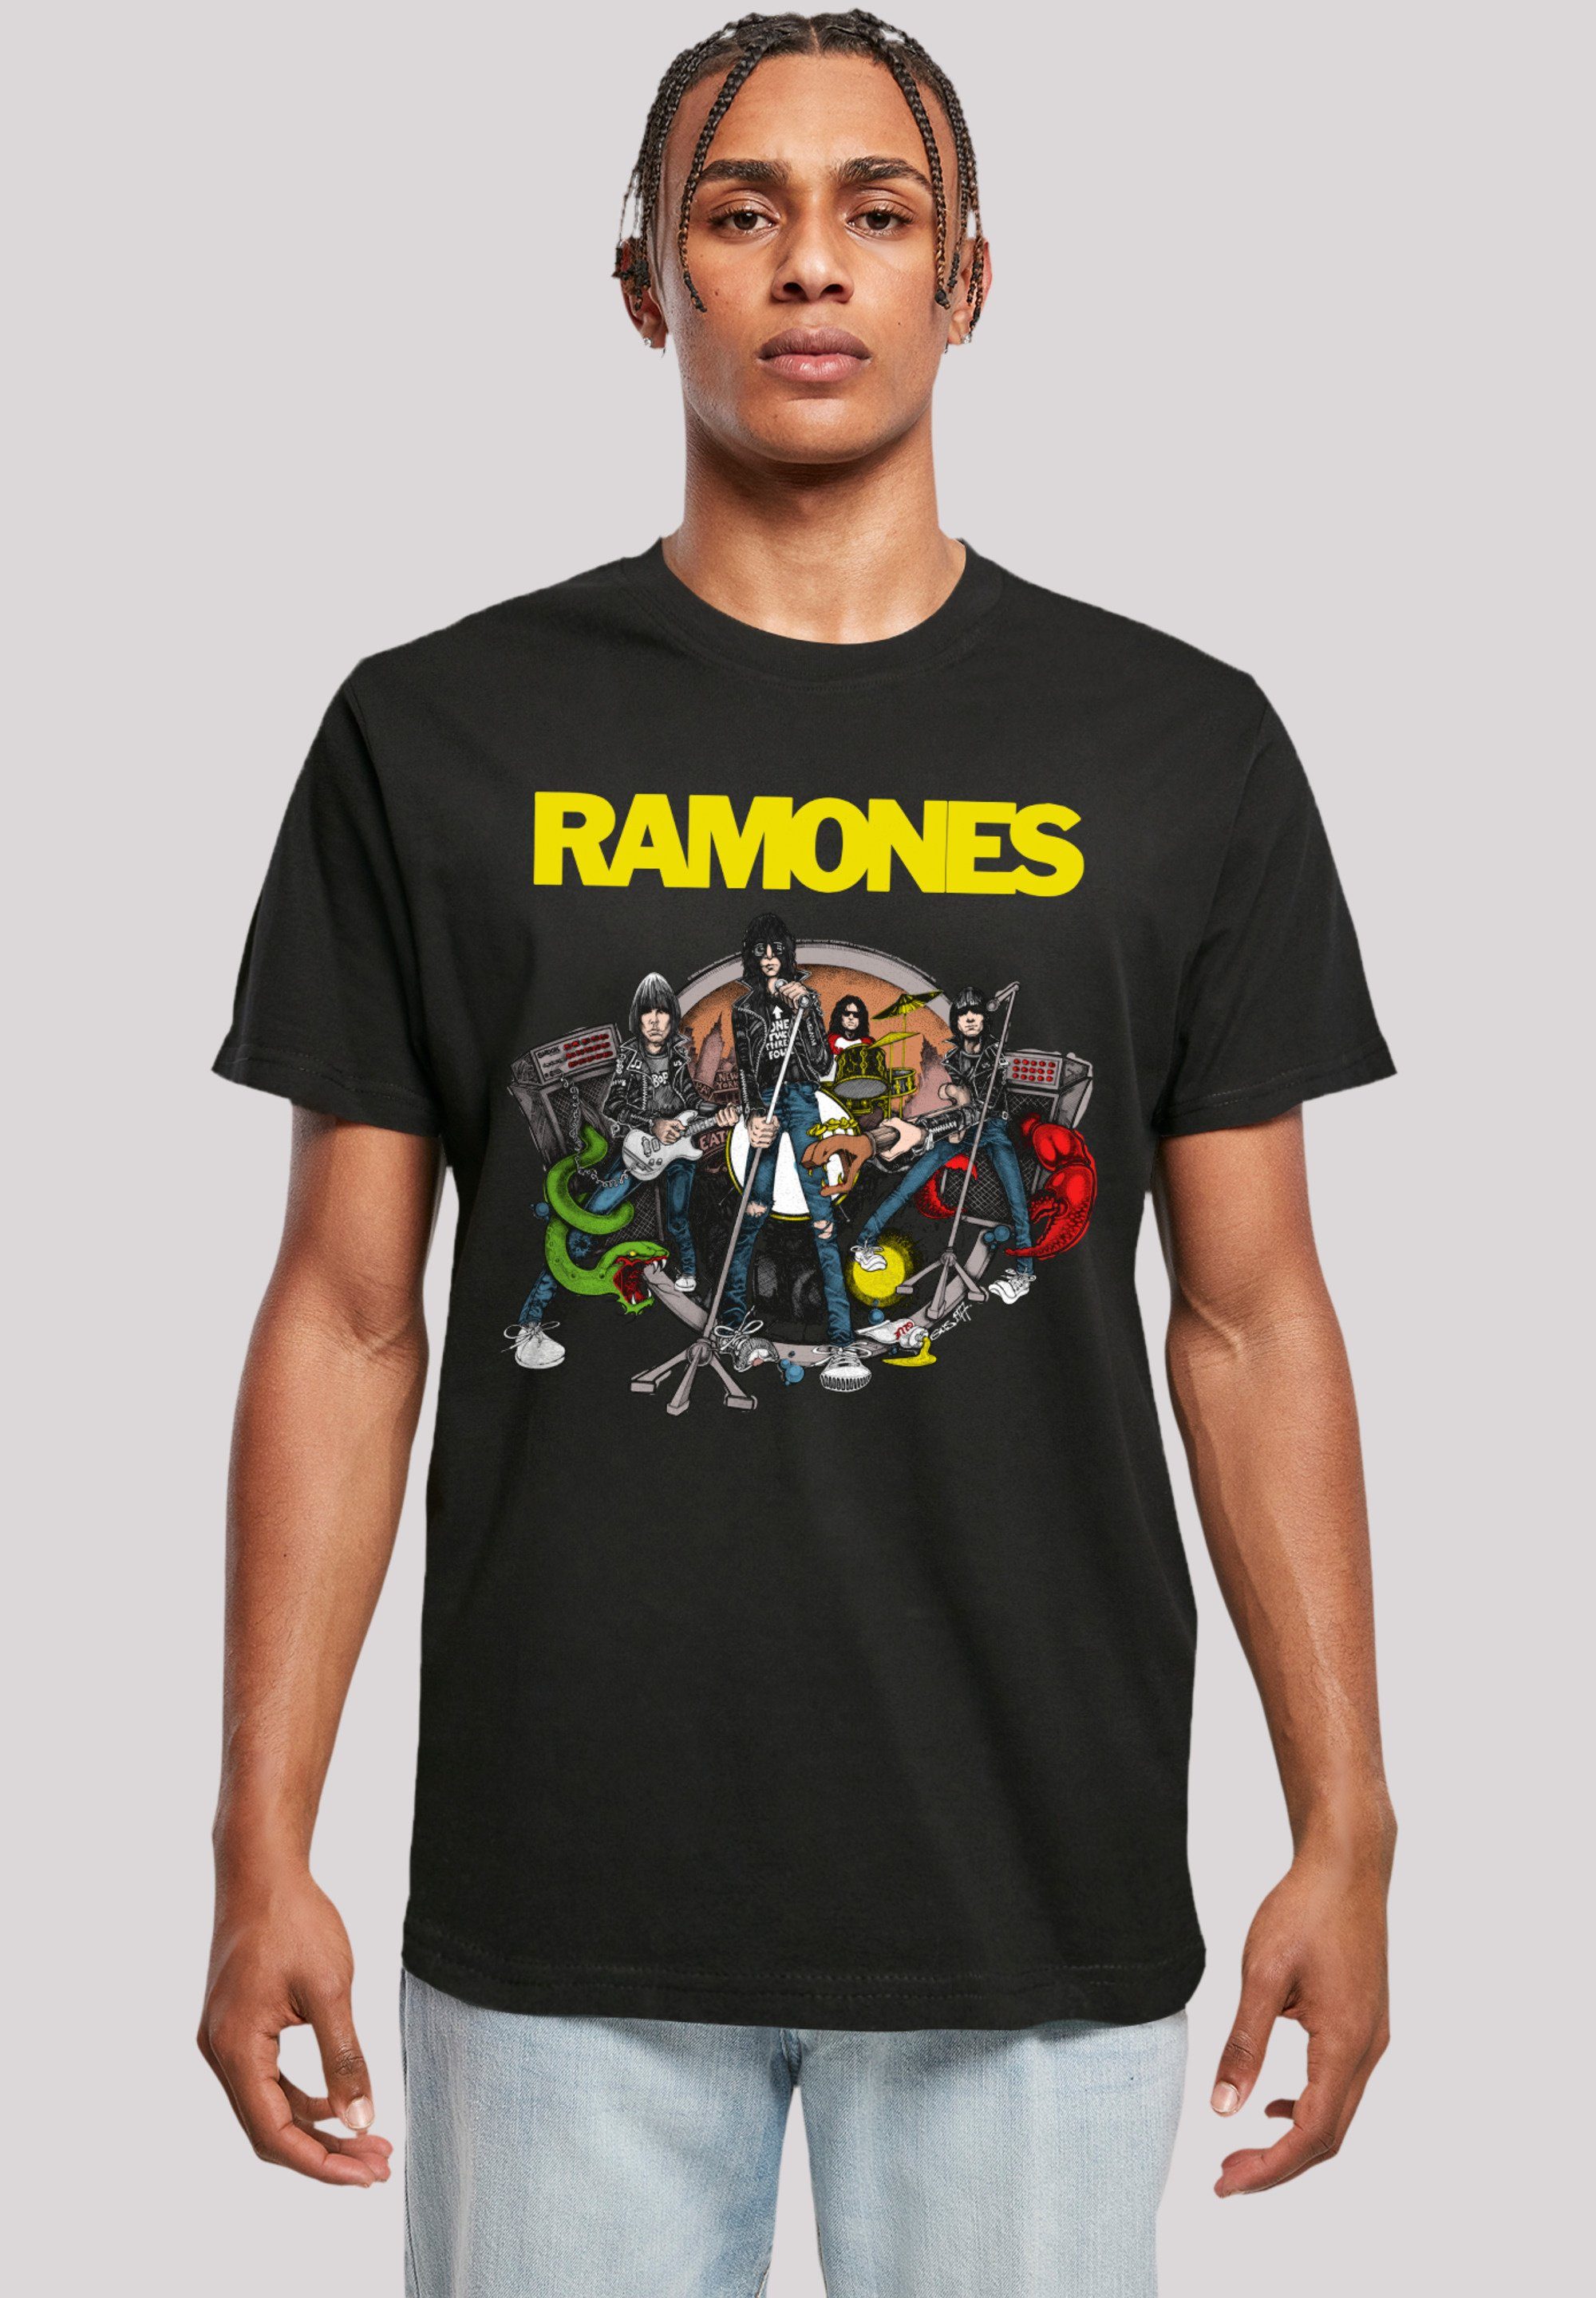 Tragekomfort Road Baumwollstoff Rock-Musik, hohem Ruin Musik mit Premium Band, weicher Ramones Sehr Band T-Shirt F4NT4STIC Rock To Qualität,